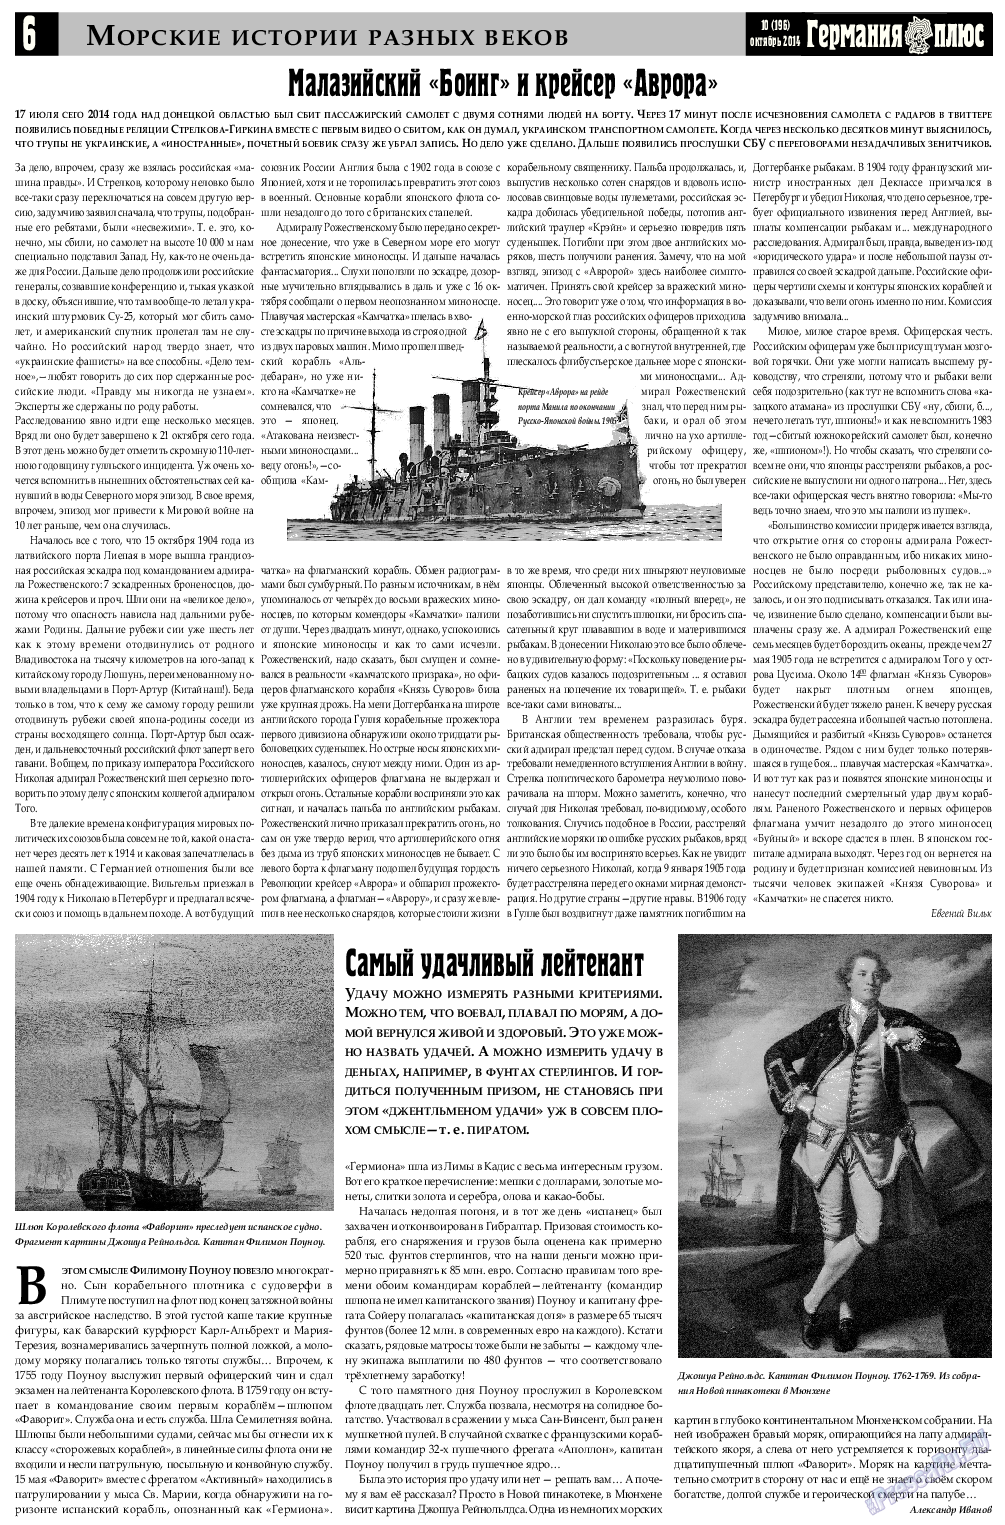 Германия плюс, газета. 2014 №9 стр.6